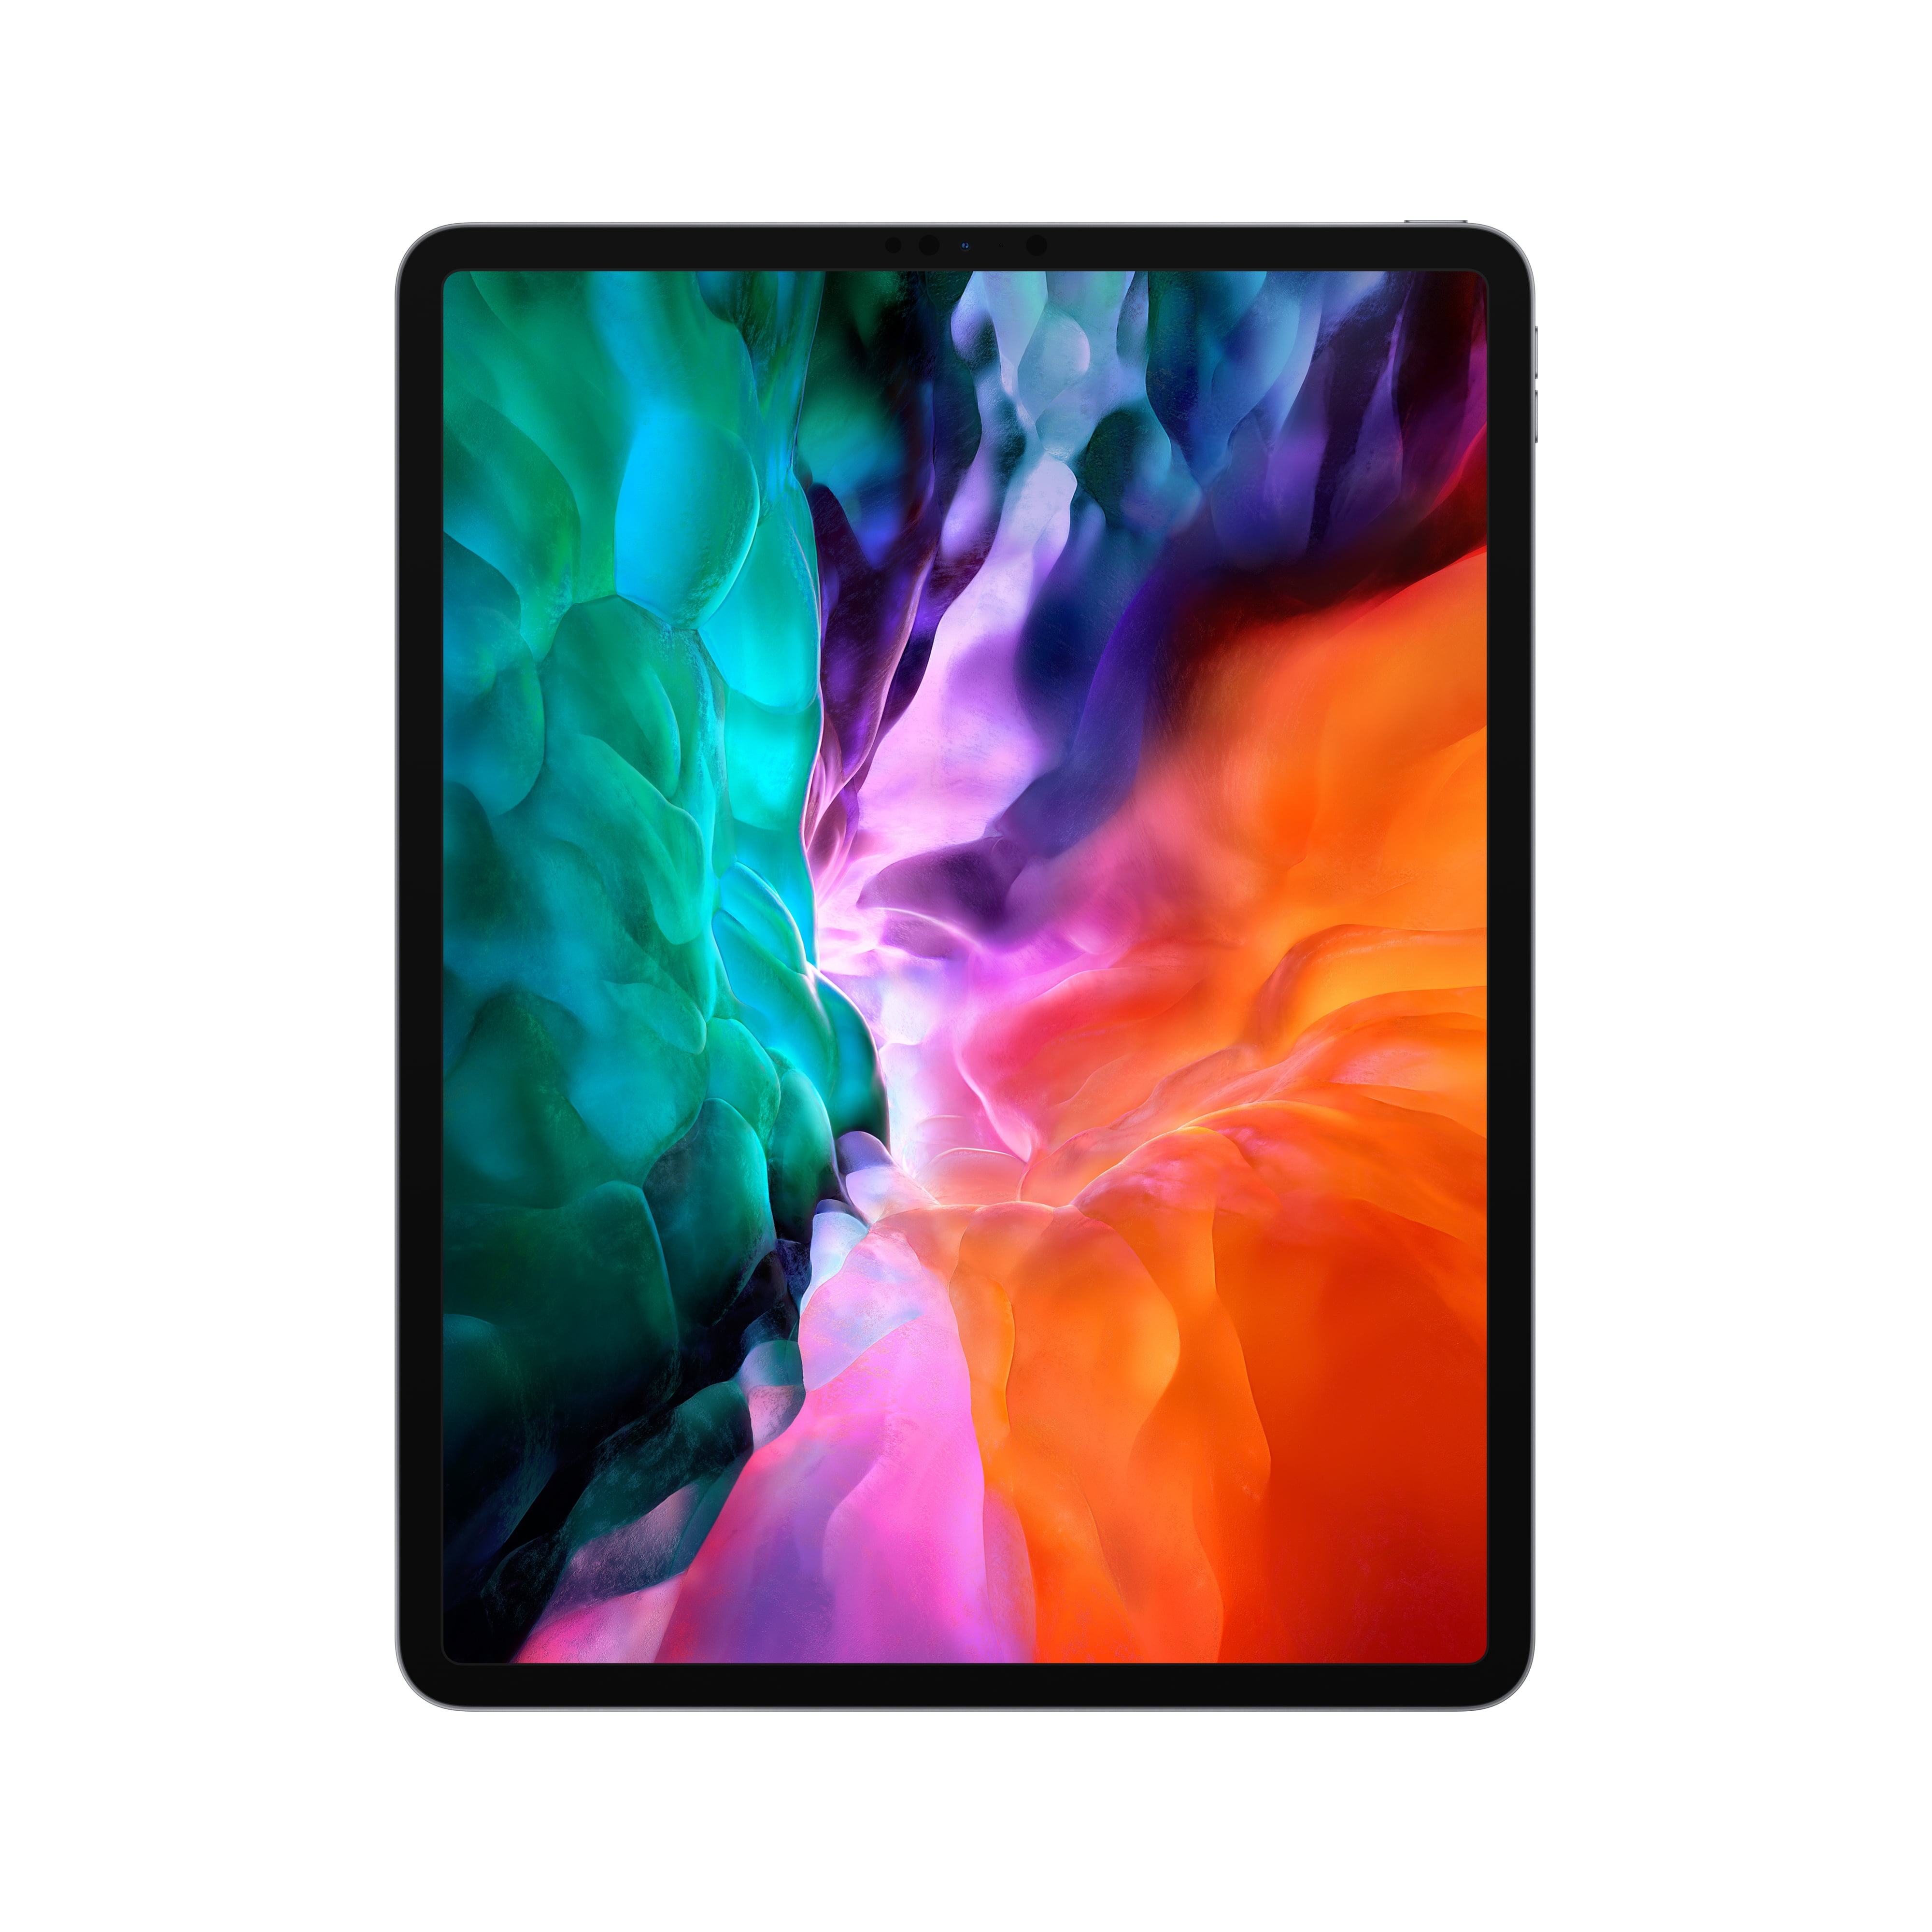 Apple 12.9-inch iPad Pro (2020) Wi-Fi 256GB - Space Gray